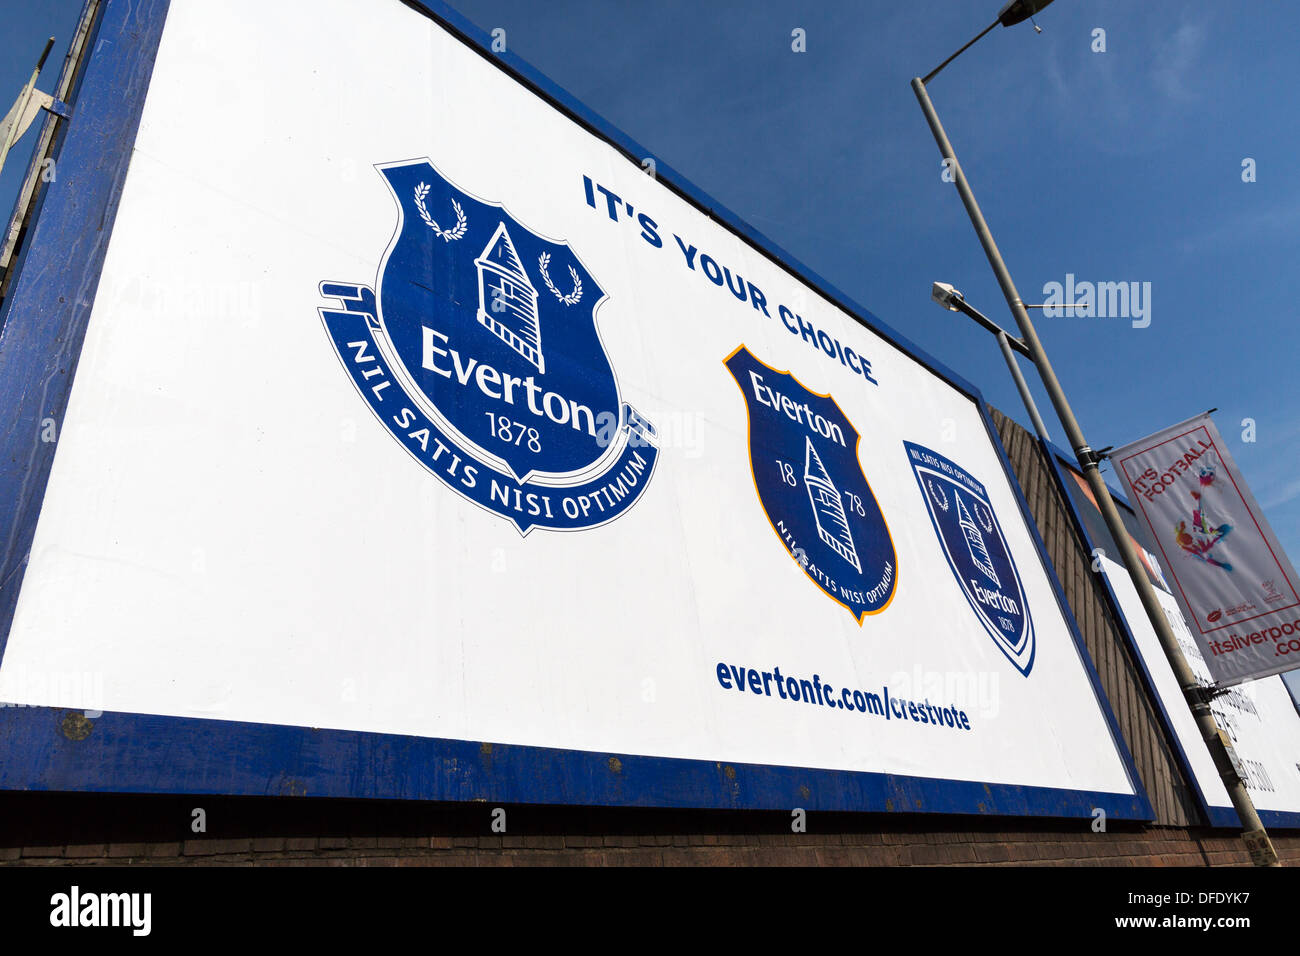 Une thésaurisation à l'extérieur de Goodison Park à Liverpool montrant les trois options pour crest Everton FC. Le nouveau crest est sur la gauche. Banque D'Images